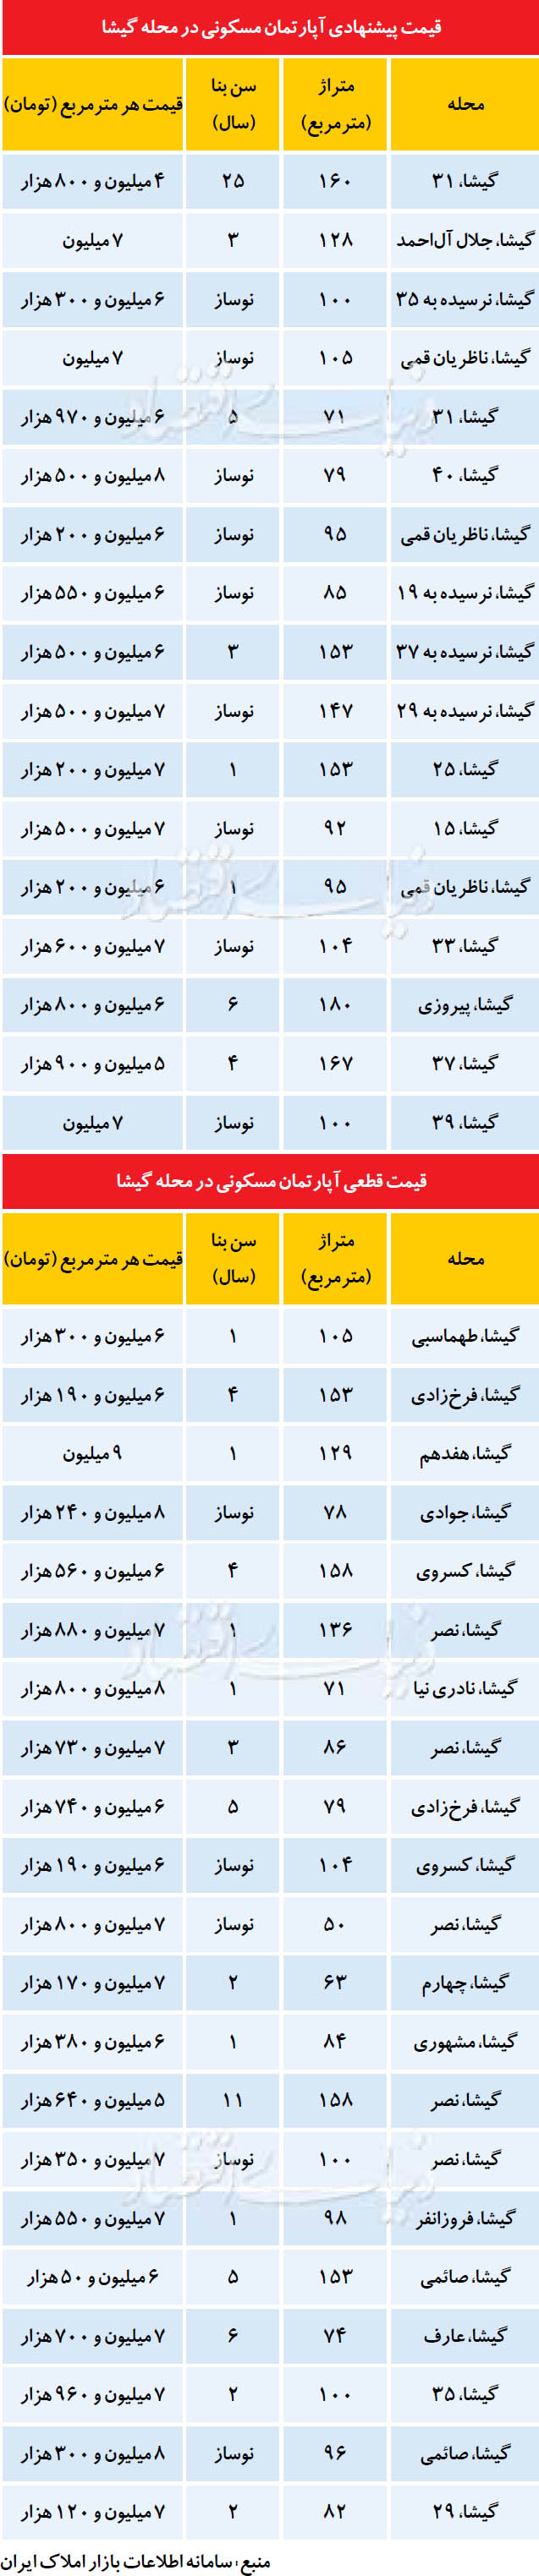 قیمت آپارتمان در محله گیشا (جدول)